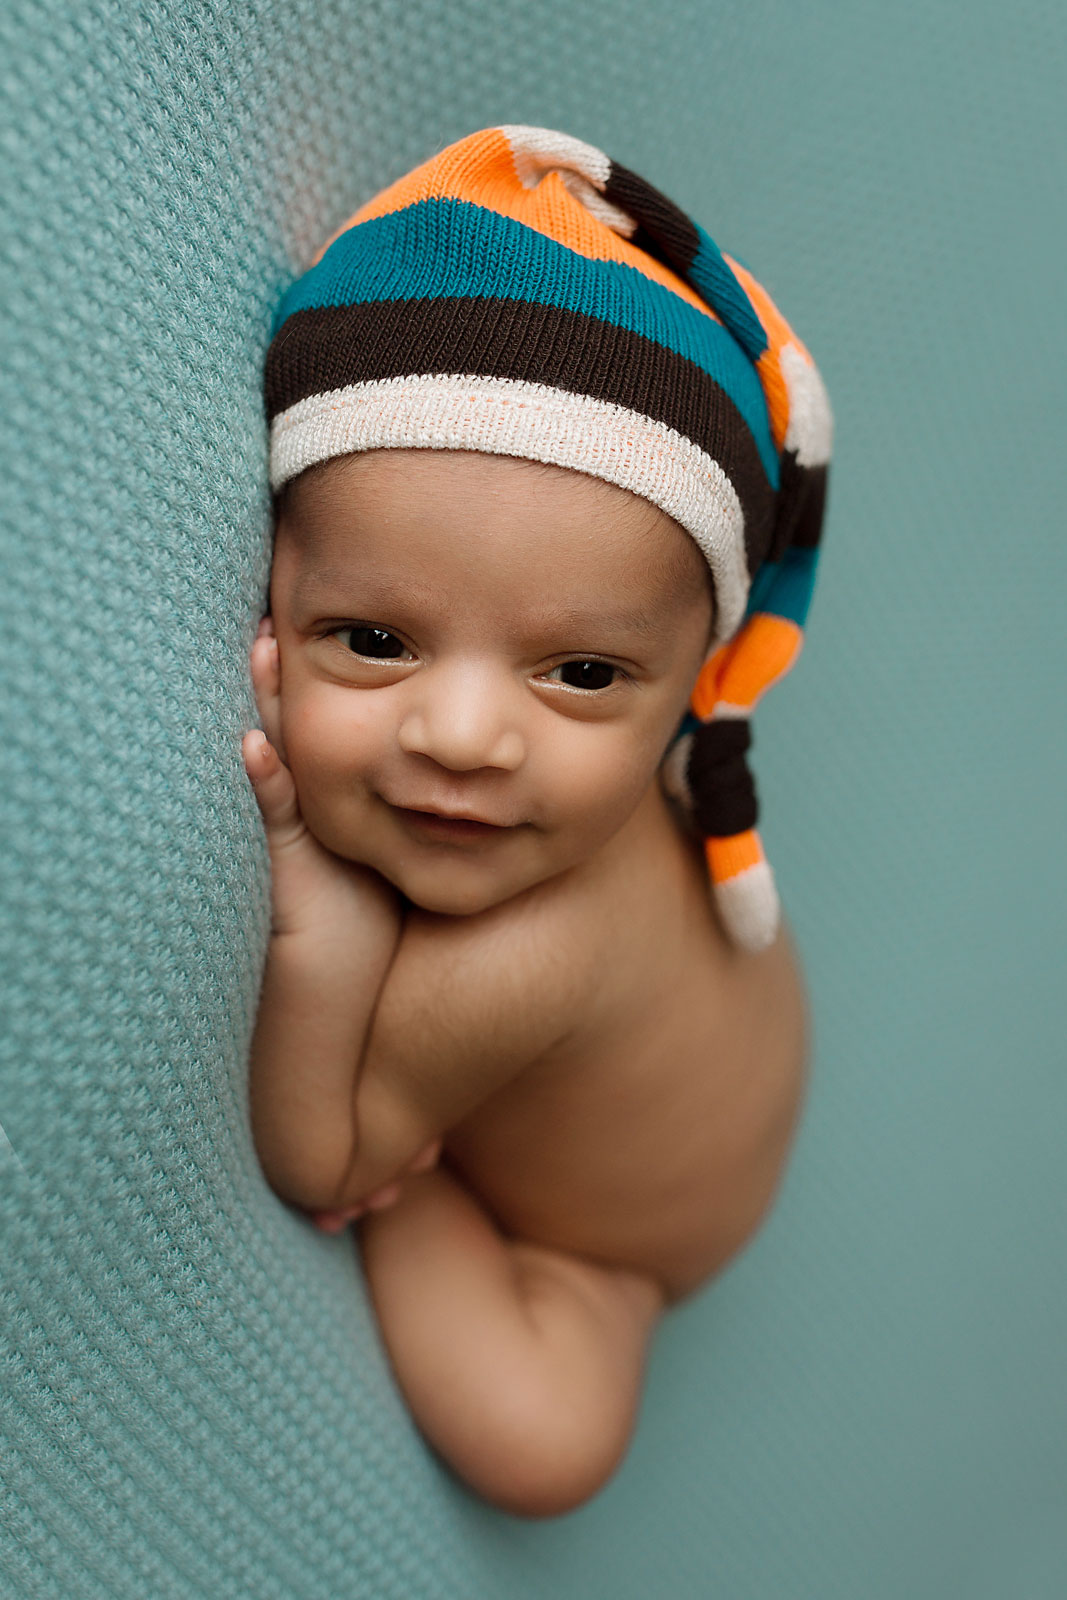 smiley baby edison nj newborn photographer 